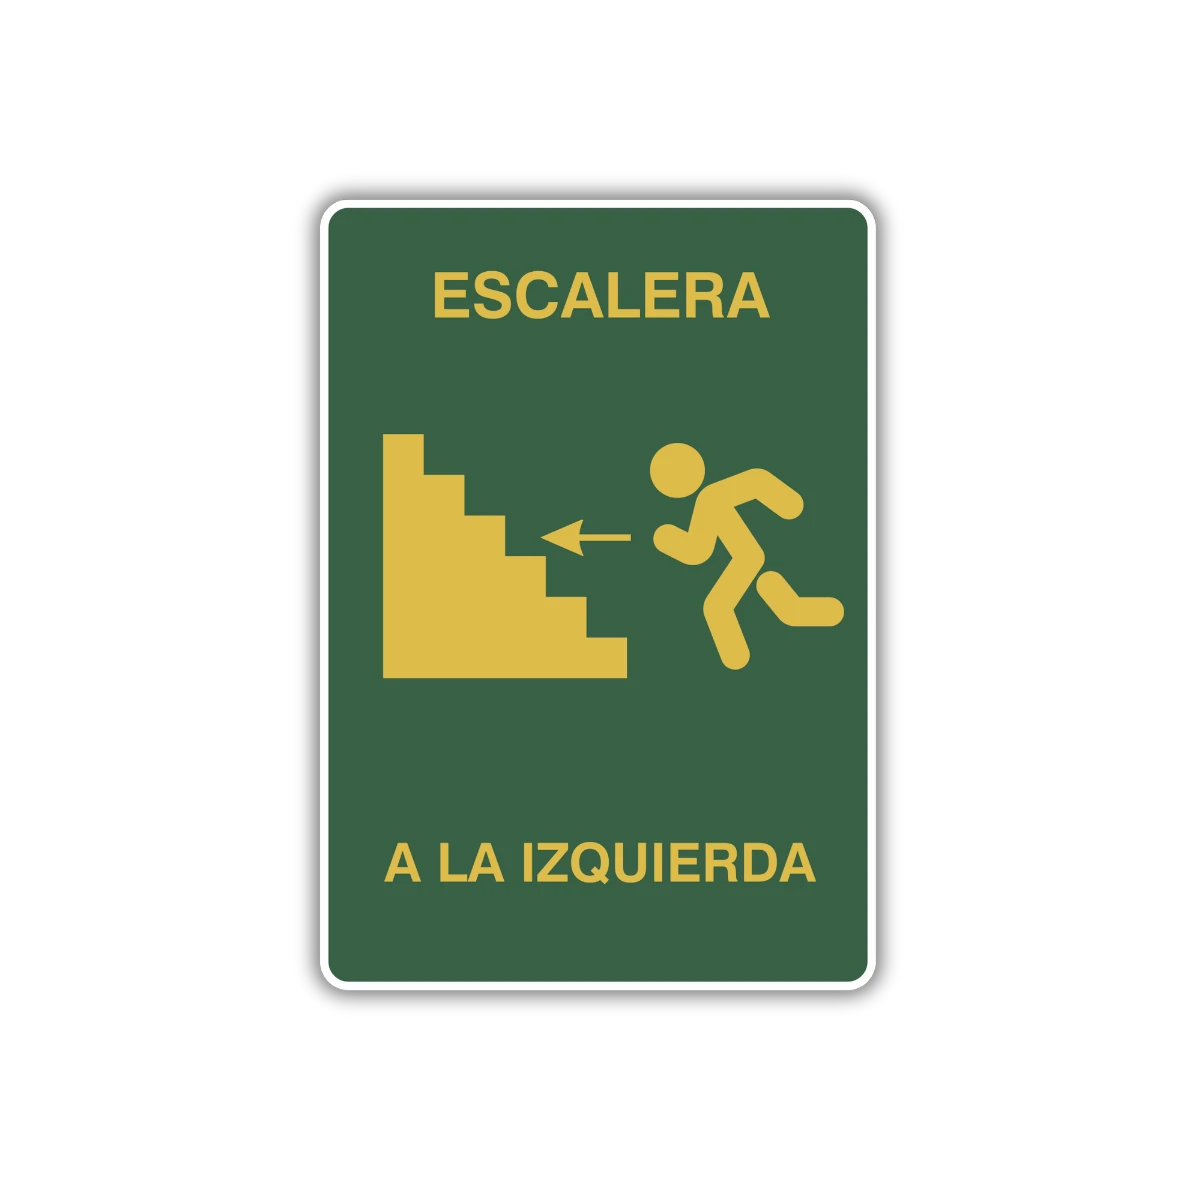 La señal Izquierda a escalera te ayuda a localizar rápidamente lava de escape